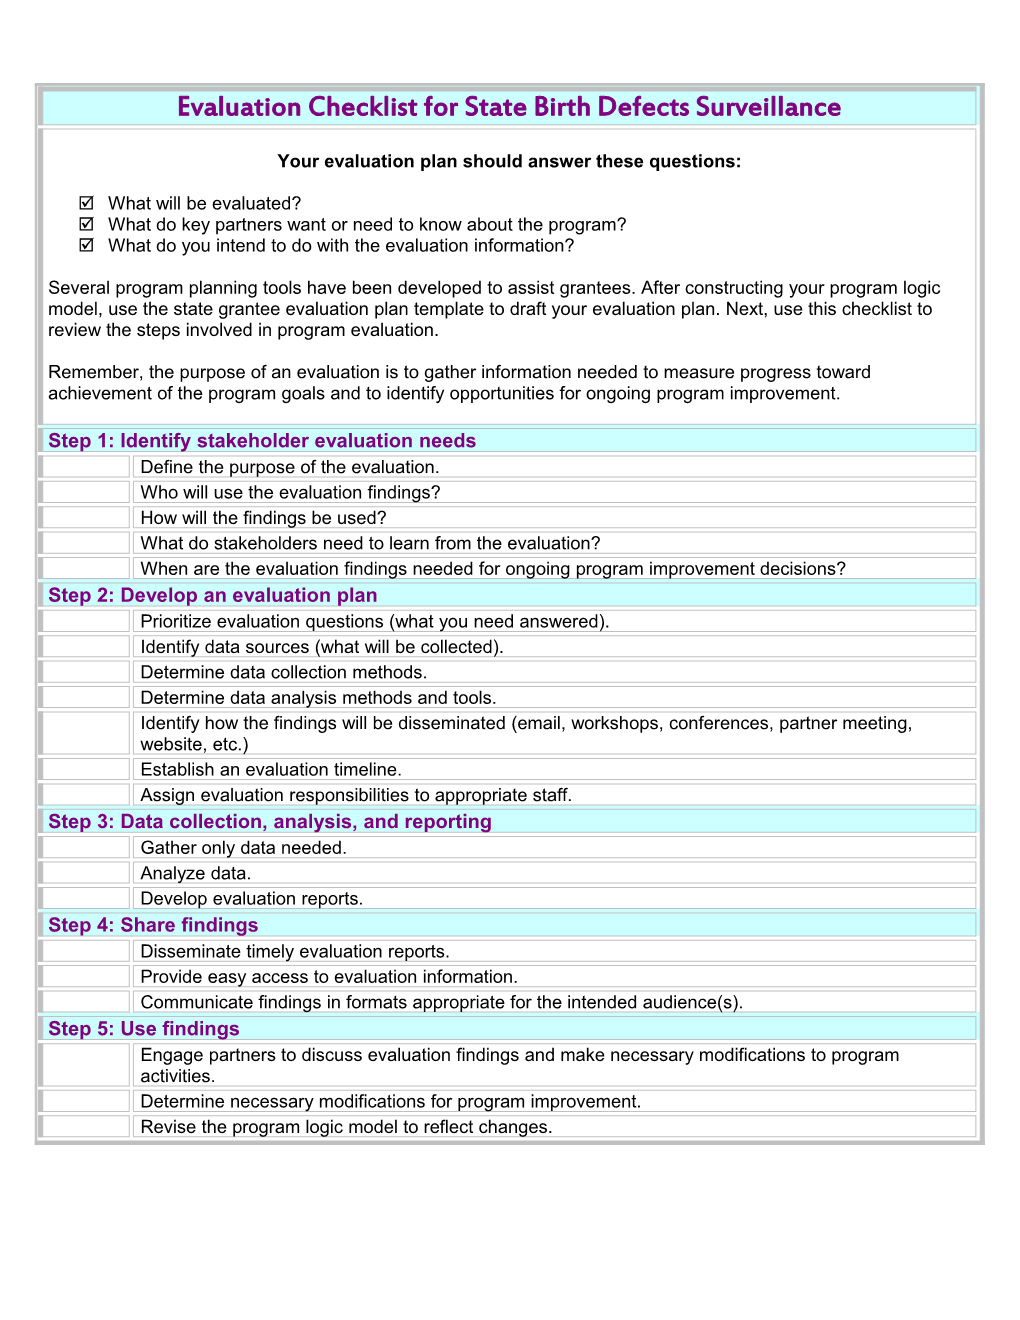 Checklist 1: Evaluation Planning